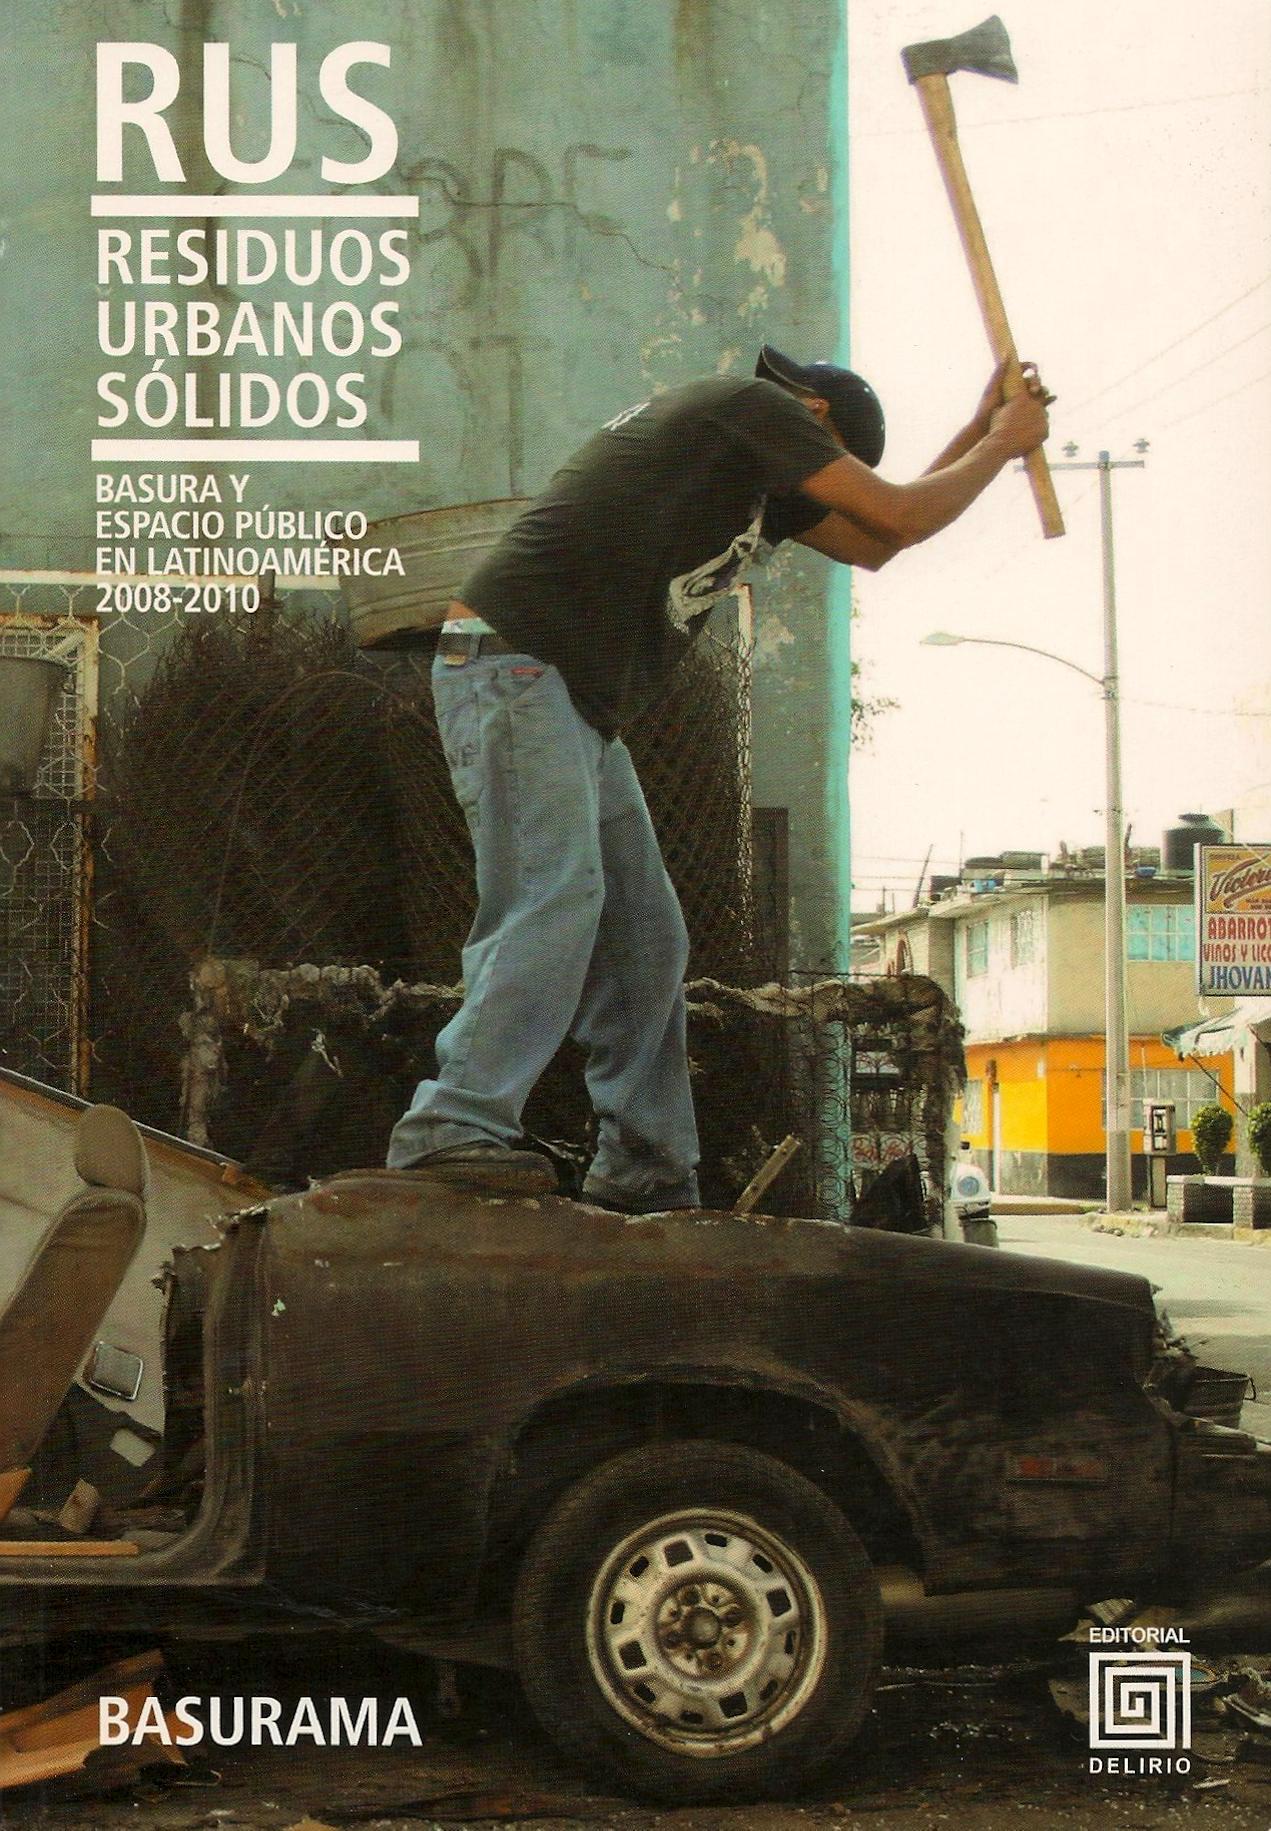 RUS: Residuos Urbanos Sólidos. Basura y espacio público en Latinoamérica